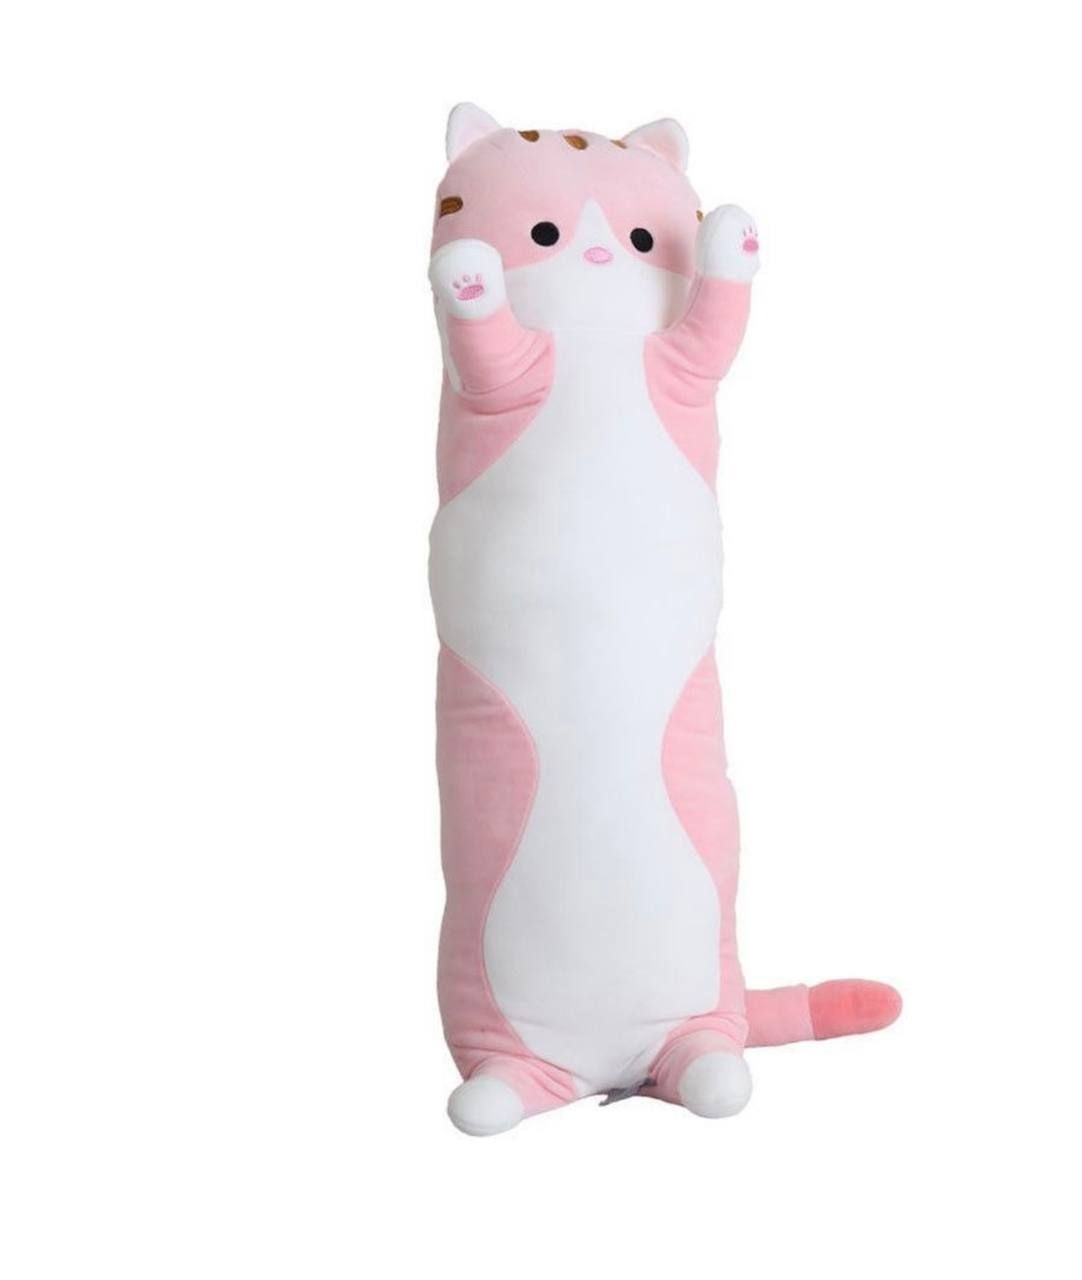 Кошка мягкая длинная. Кот батон мягкая игрушка 110 см. Длинная подушка обнимашка кот 110 см. Подушка обнимашка кот батон. Кот батон 110 см розовый.